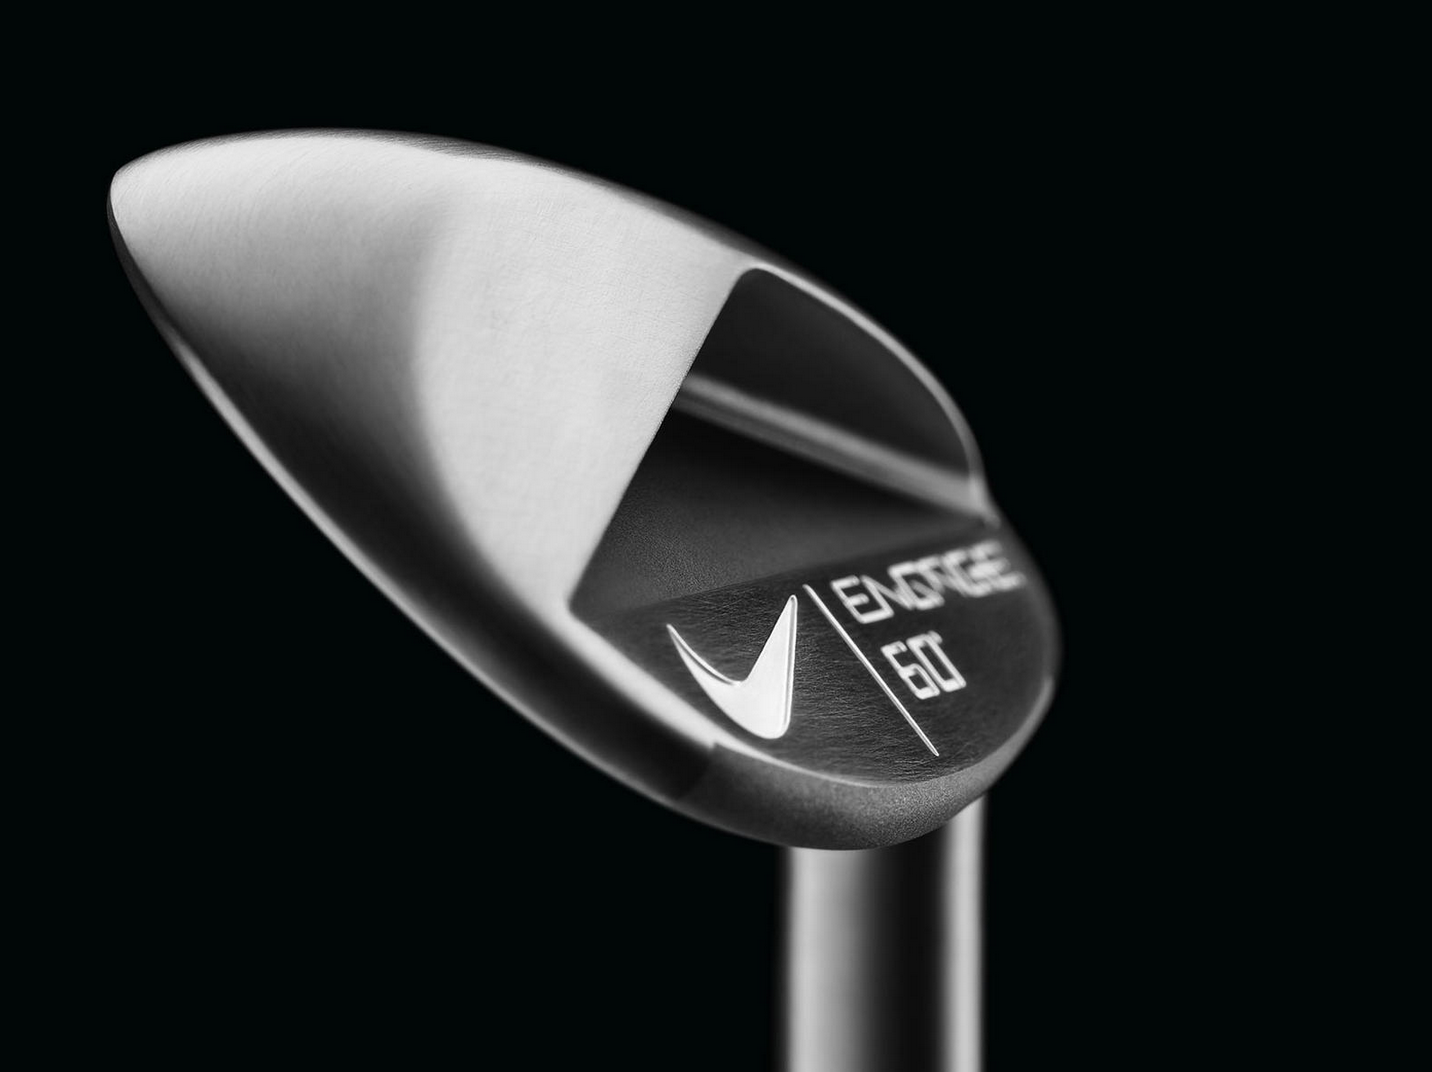 Nike's new Engage wedges – GolfWRX